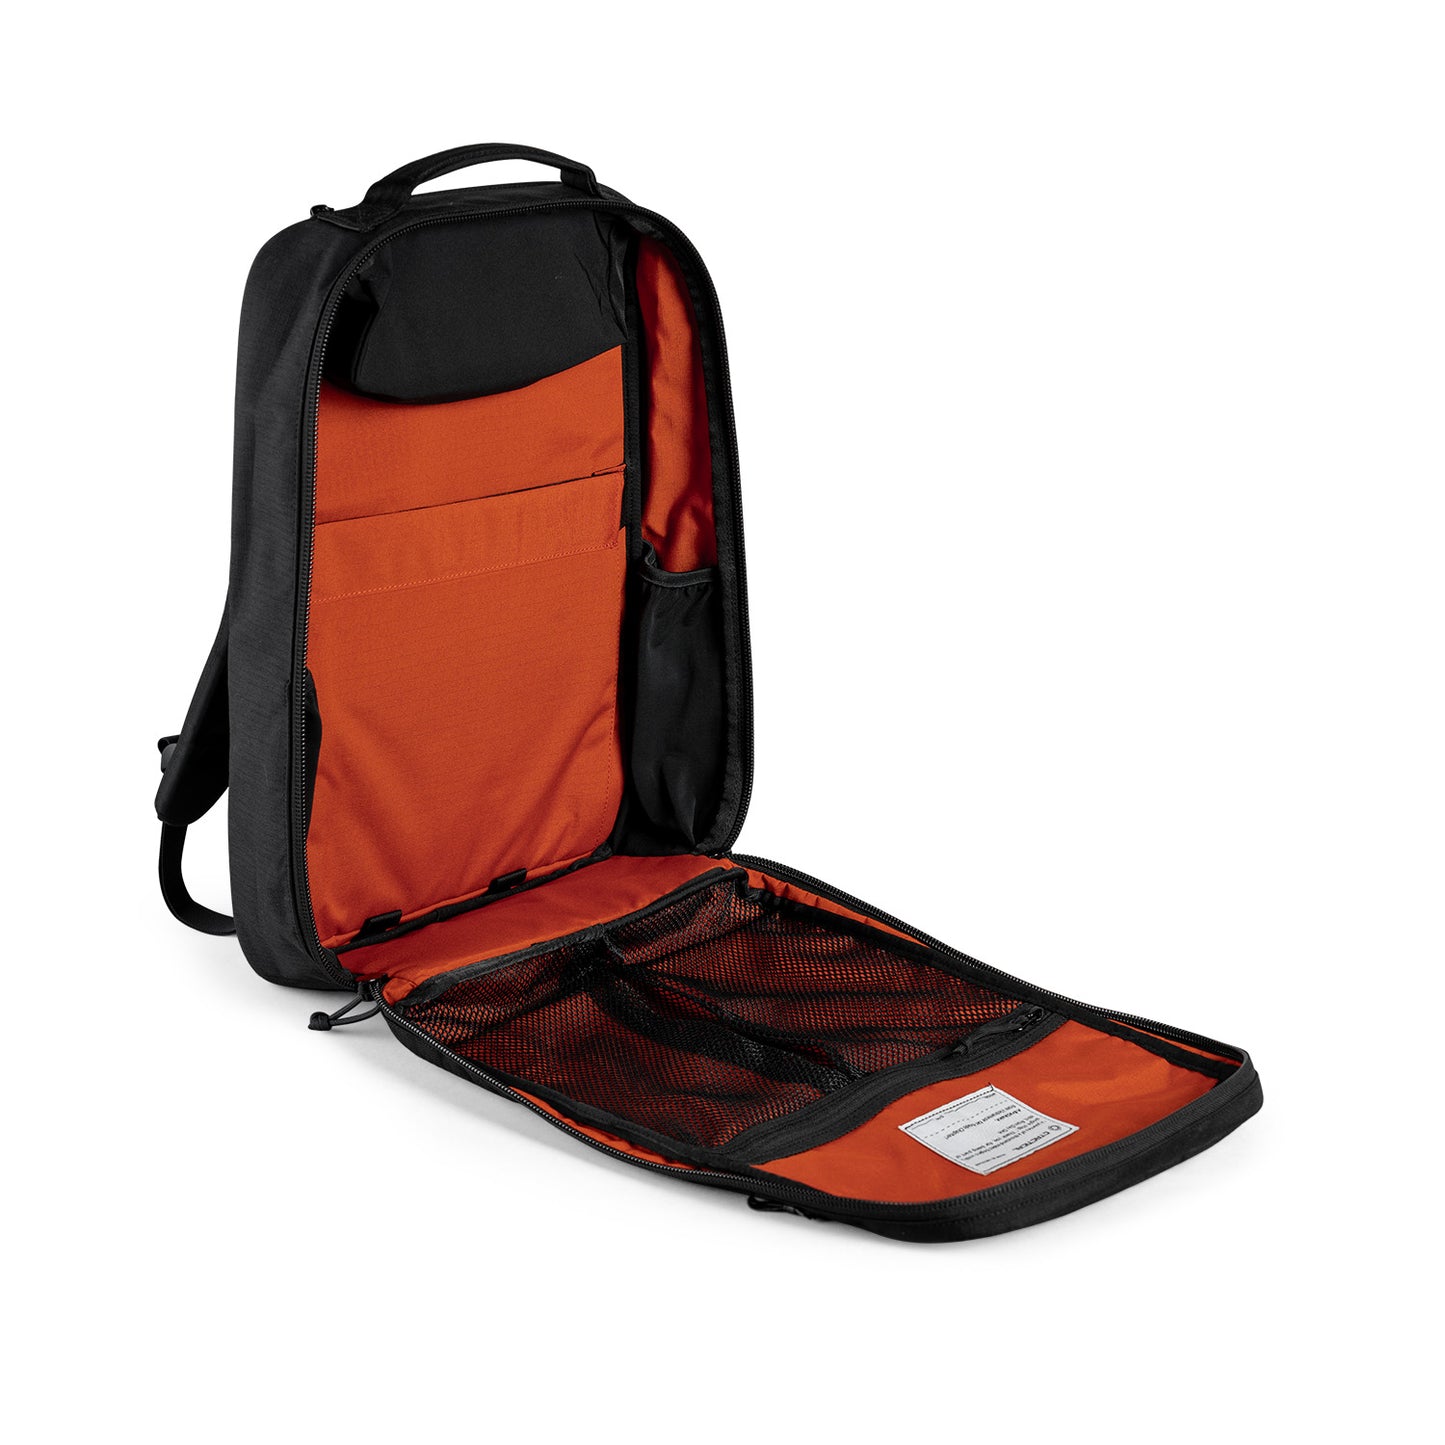 CT21 V3.0 Backpack - Slick Design - Nylon 500D RIPSTOP